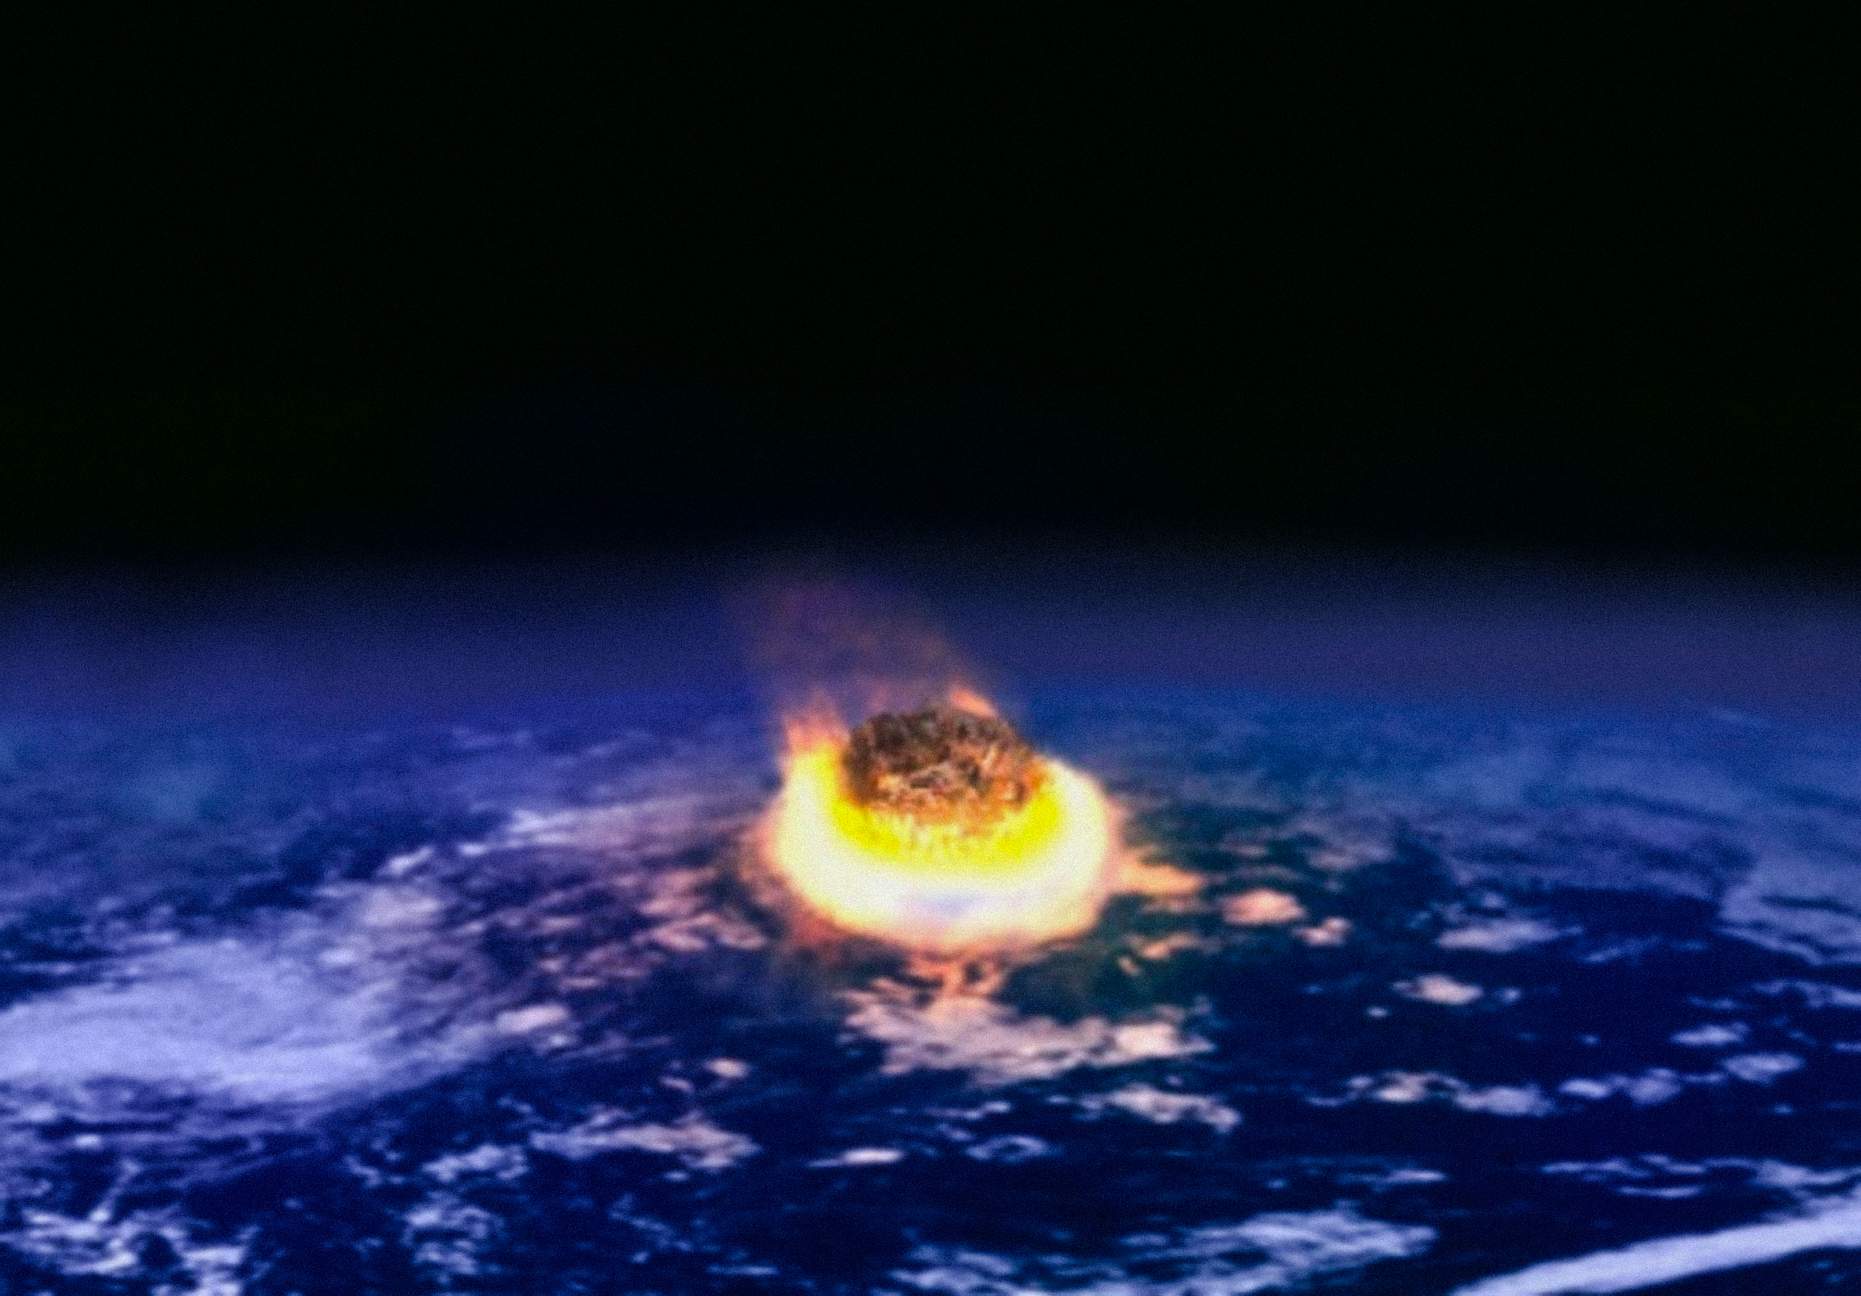 На думку Золтана Галантаї, шкала класифікації цивілізацій повинна ґрунтуватися на їхній здатності переживати катастрофи, особливо космічного походження, такі як падіння астероїда.